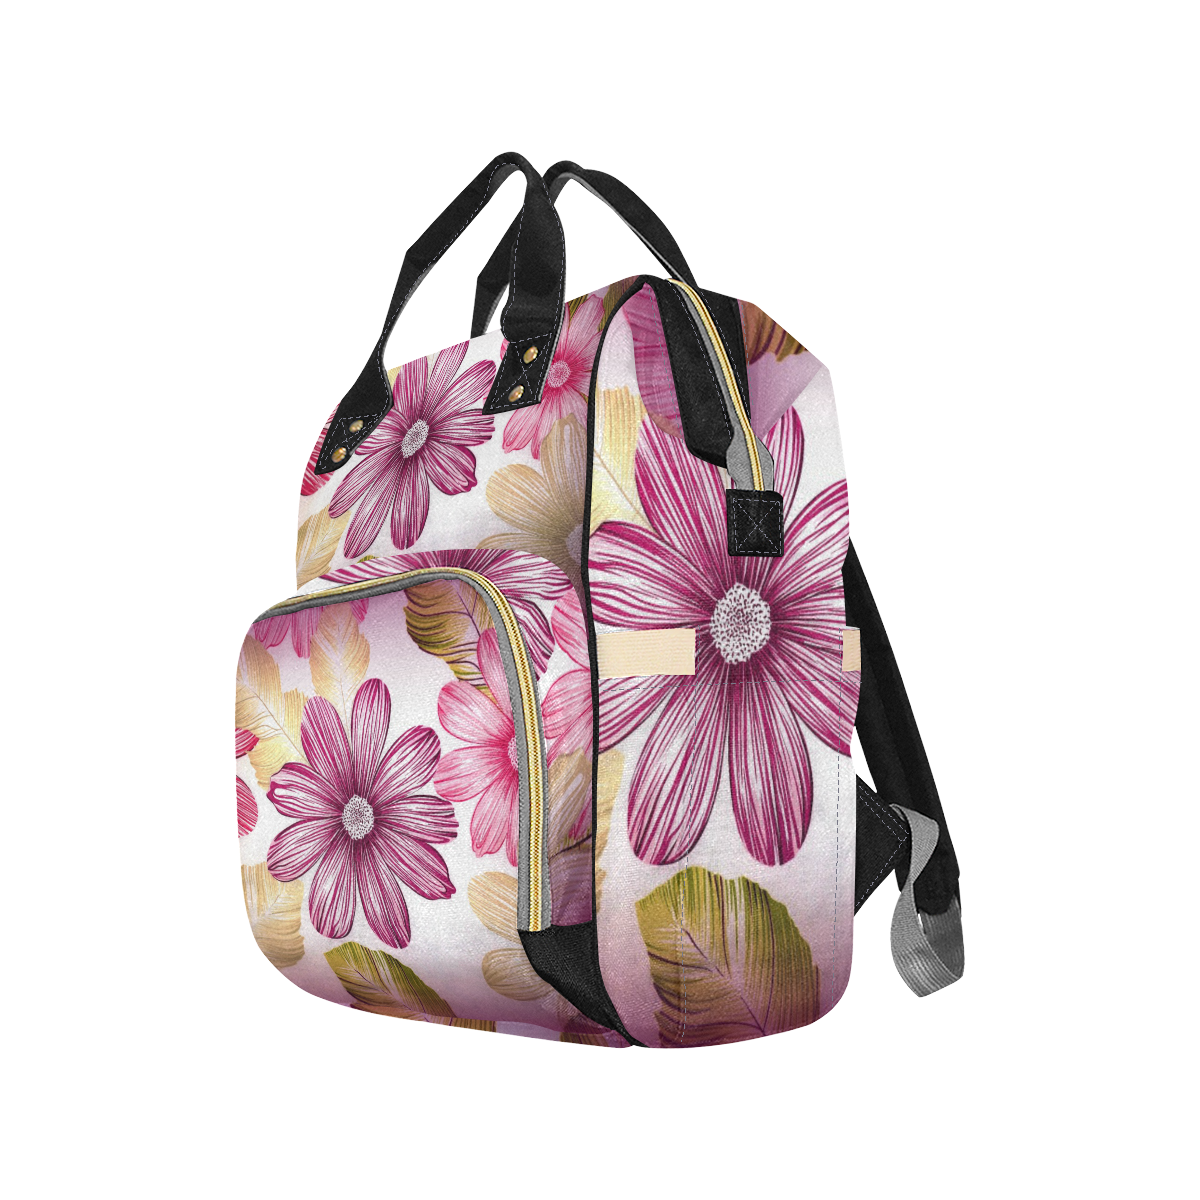 Garden Flowers Multi-Function Diaper Backpack/Diaper Bag (Model 1688)